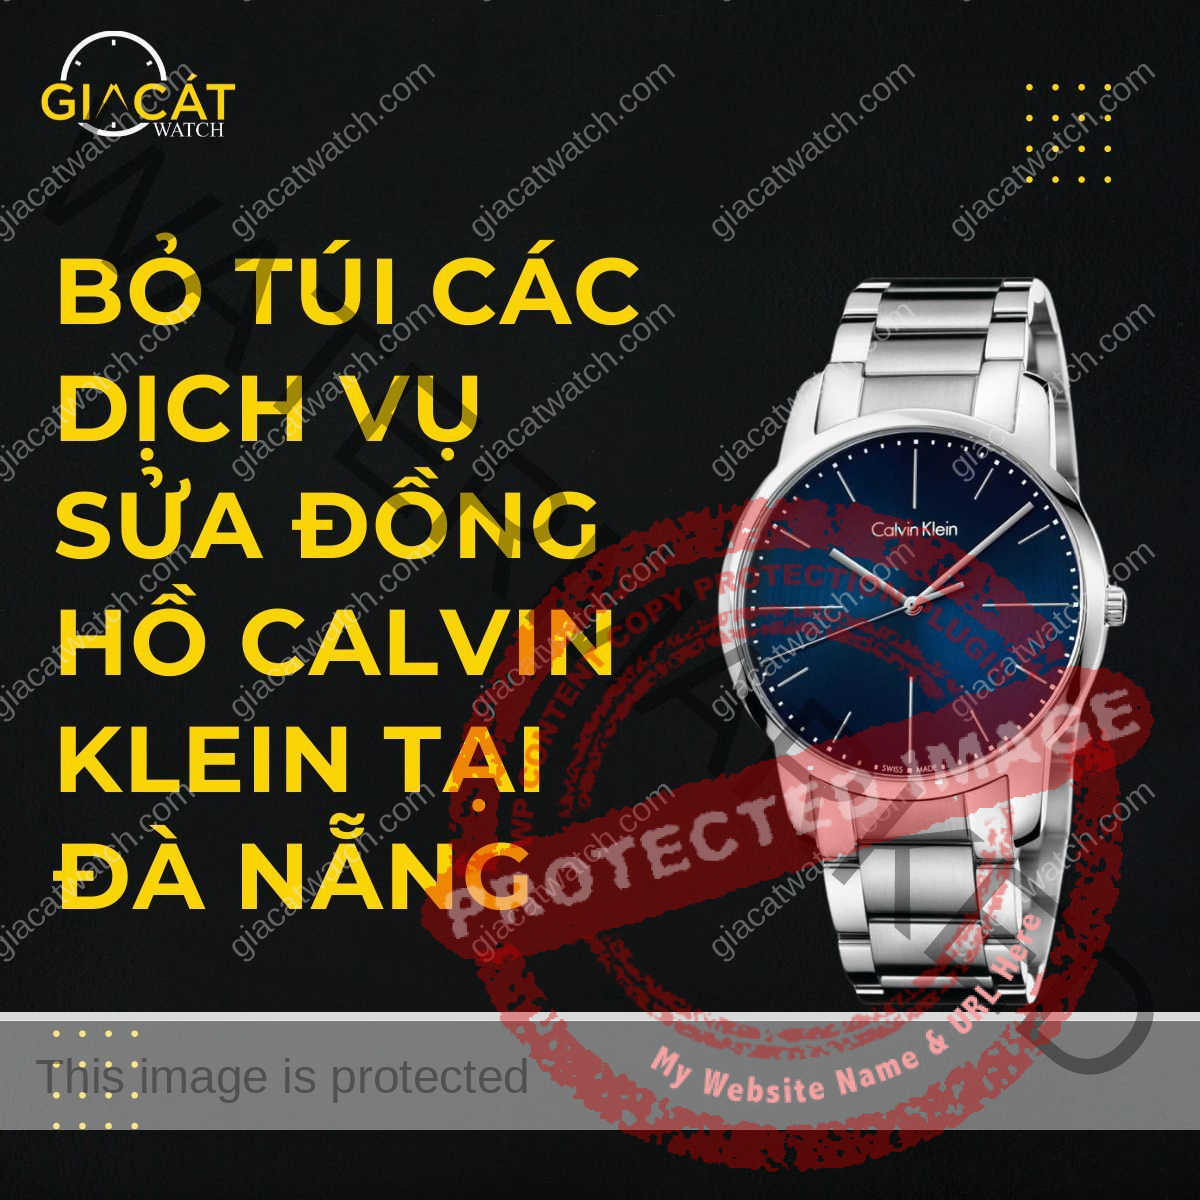 Bỏ túi các dịch vụ sửa đồng hồ Calvin Klein tại Đà Nẵng